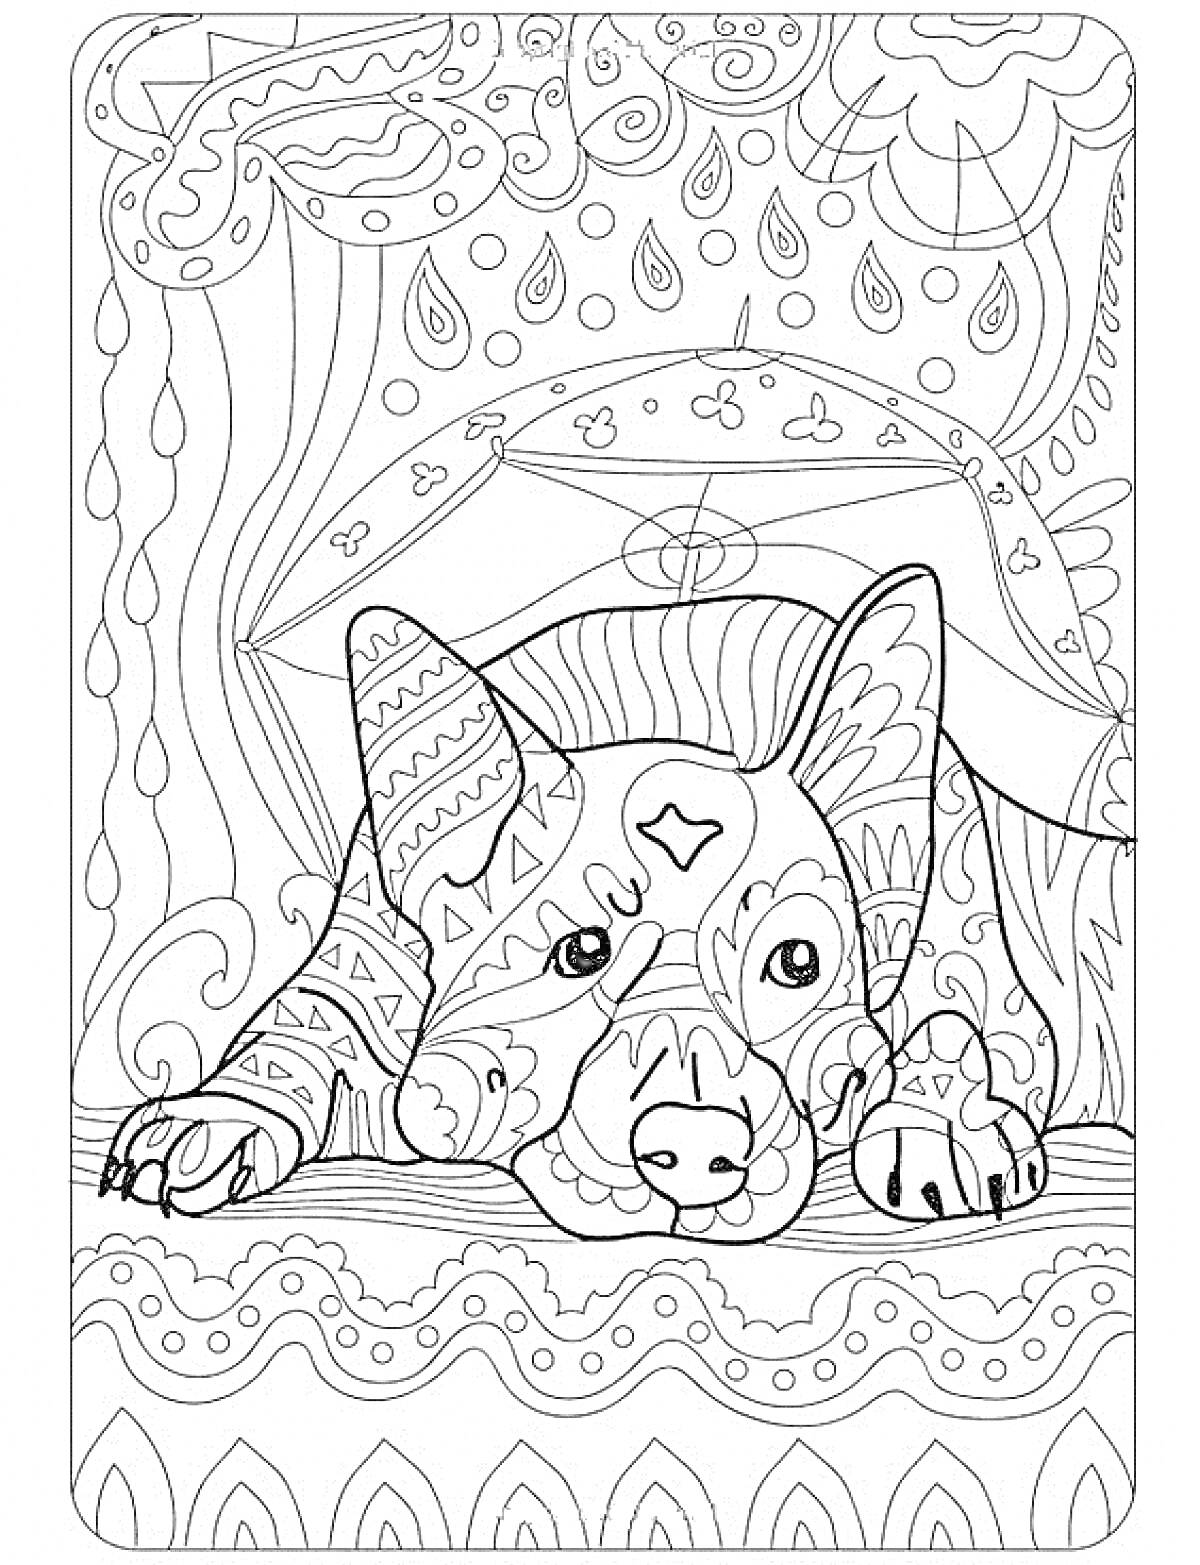 Собака с декоративными узорами, крупные лапы, задний план с абстрактными элементами: капли, линии, завитки